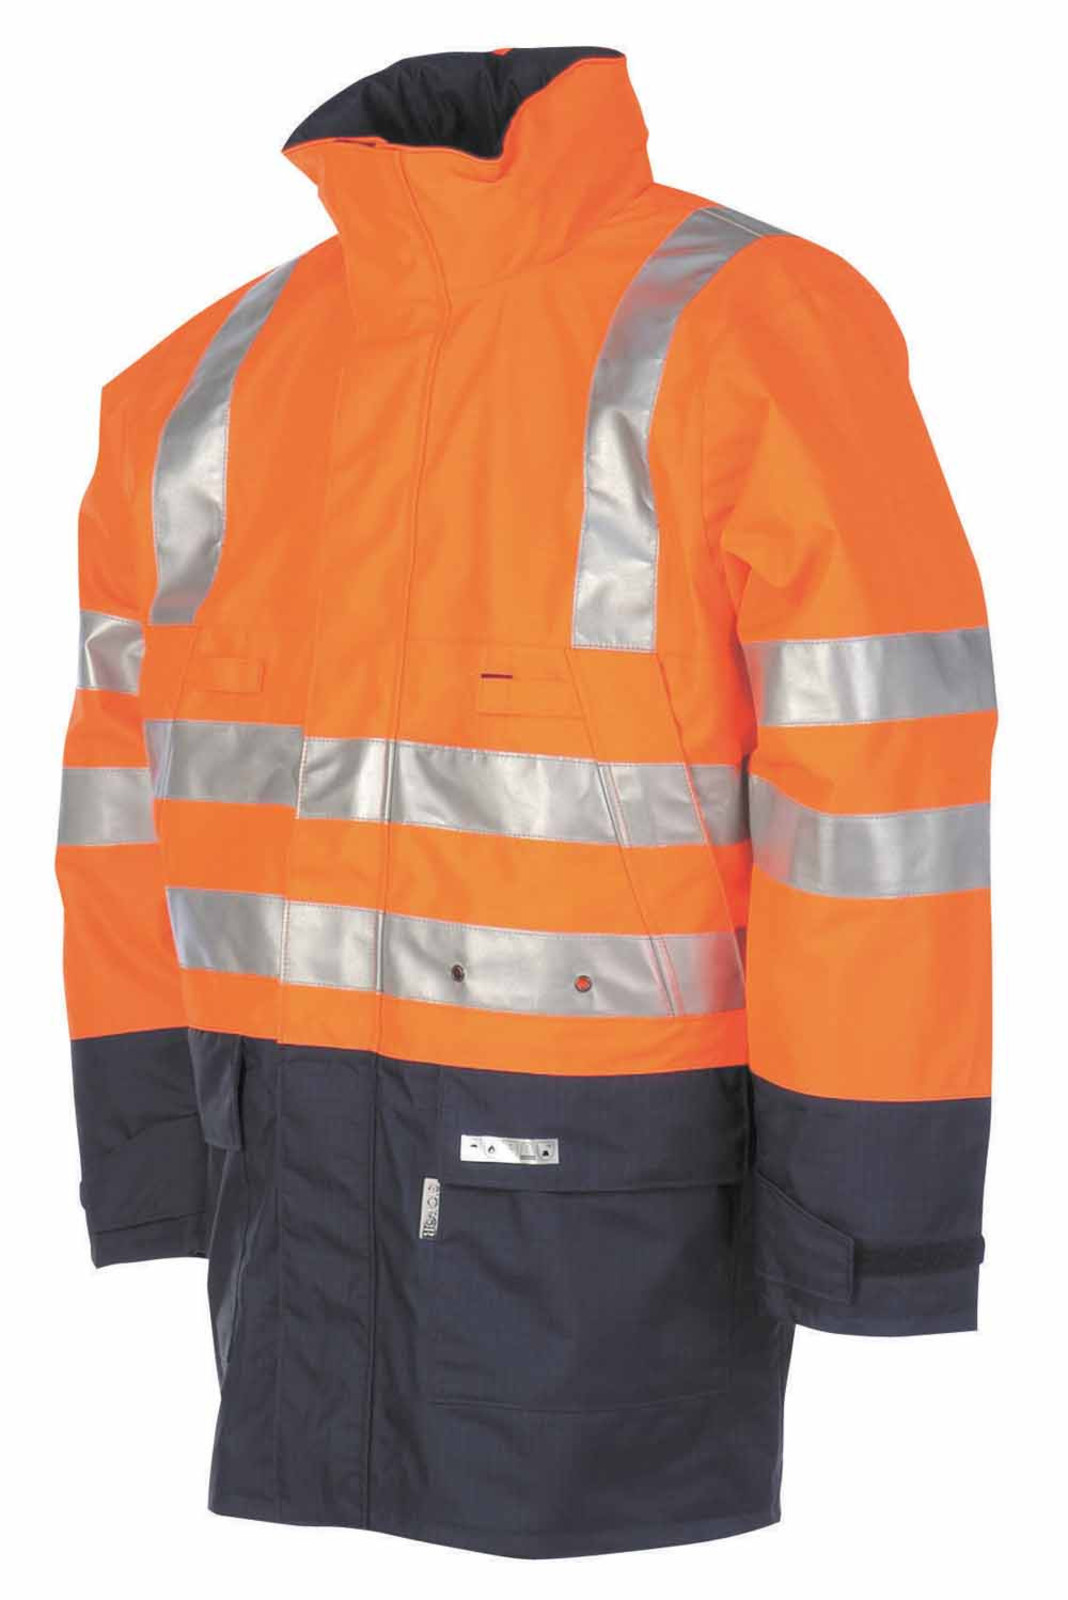 Antistatická ohňuvdzdorná bunda Winseler - veľkosť: L, farba: oranžová